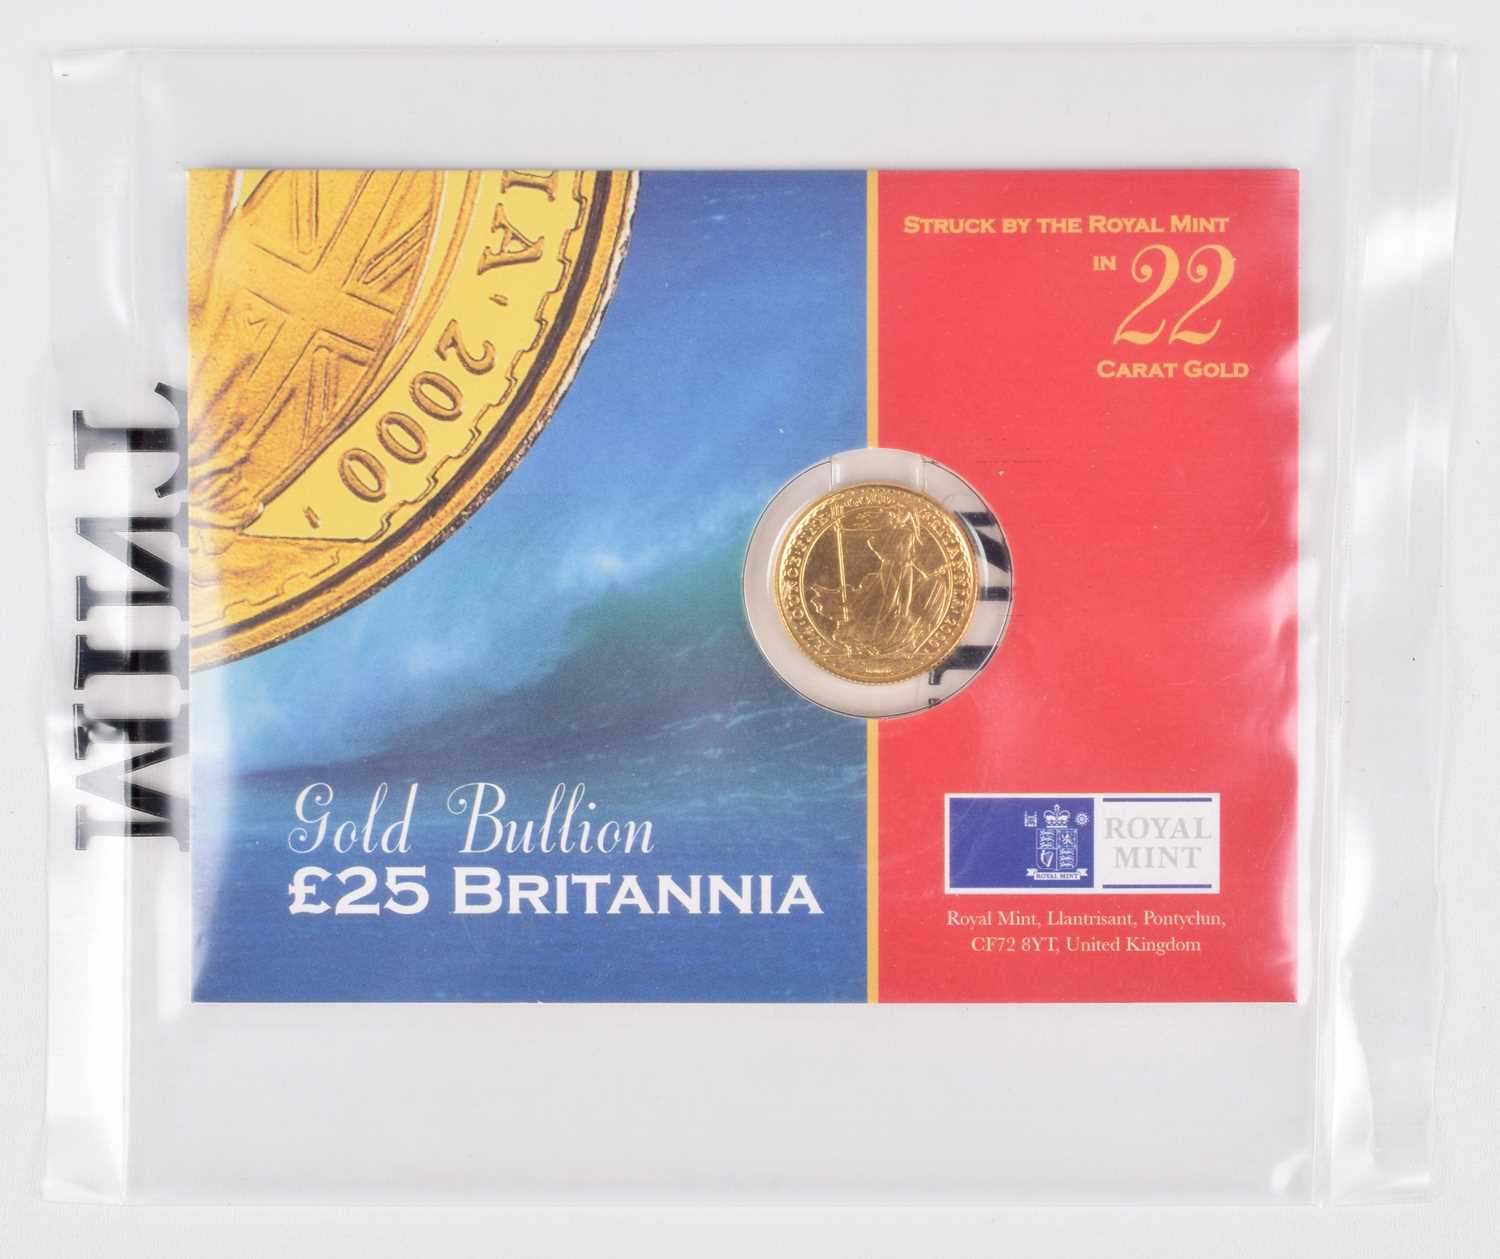 Lot 73 - Elizabeth II, Gold Bullion £25 Britannia, 2000, Royal Mint.